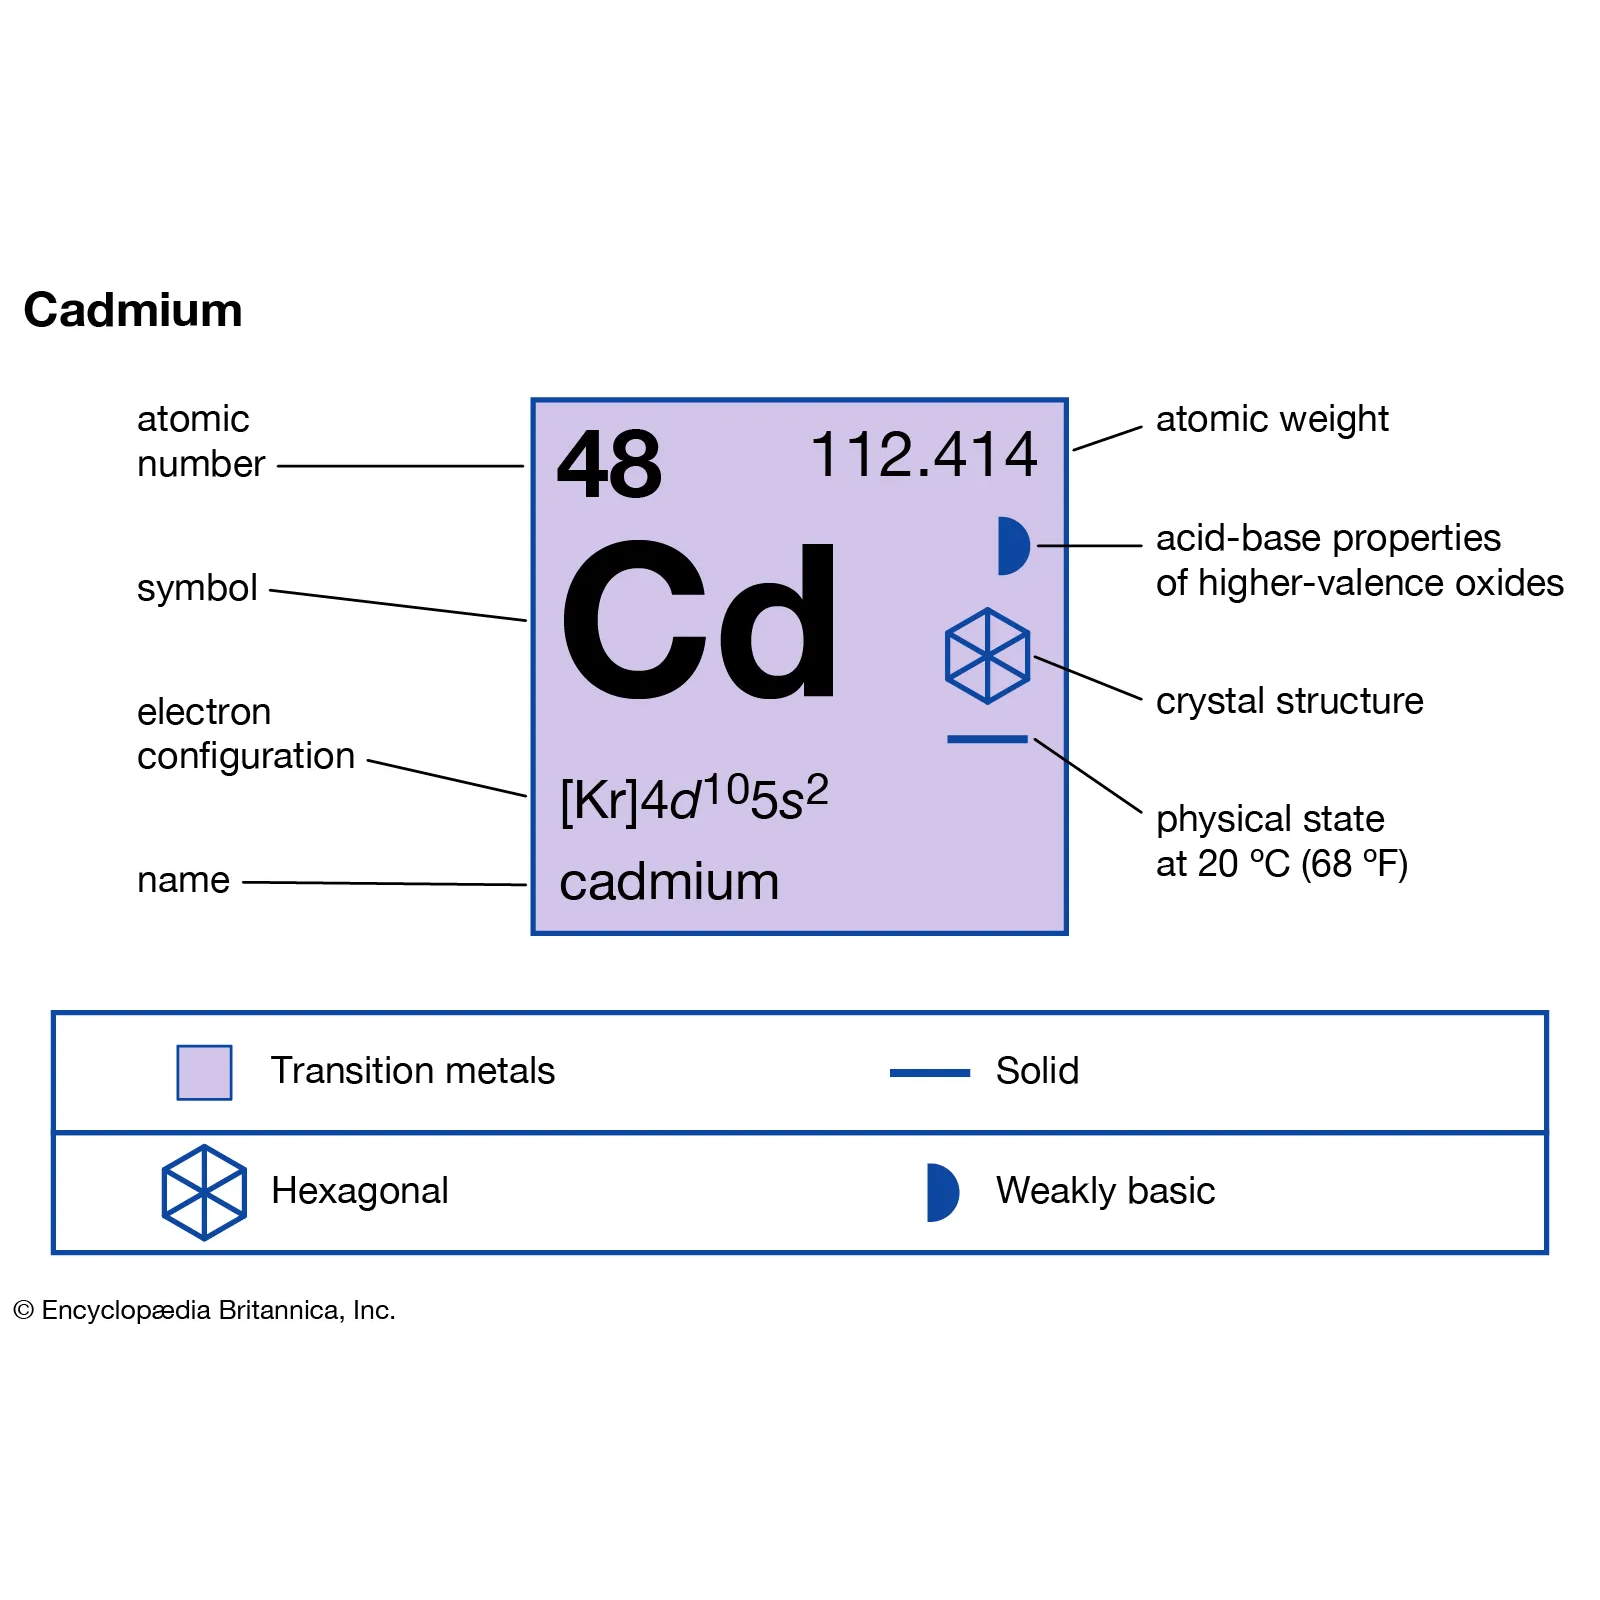 Cadmium-cadmium-symbol-square-Cd-properties-some